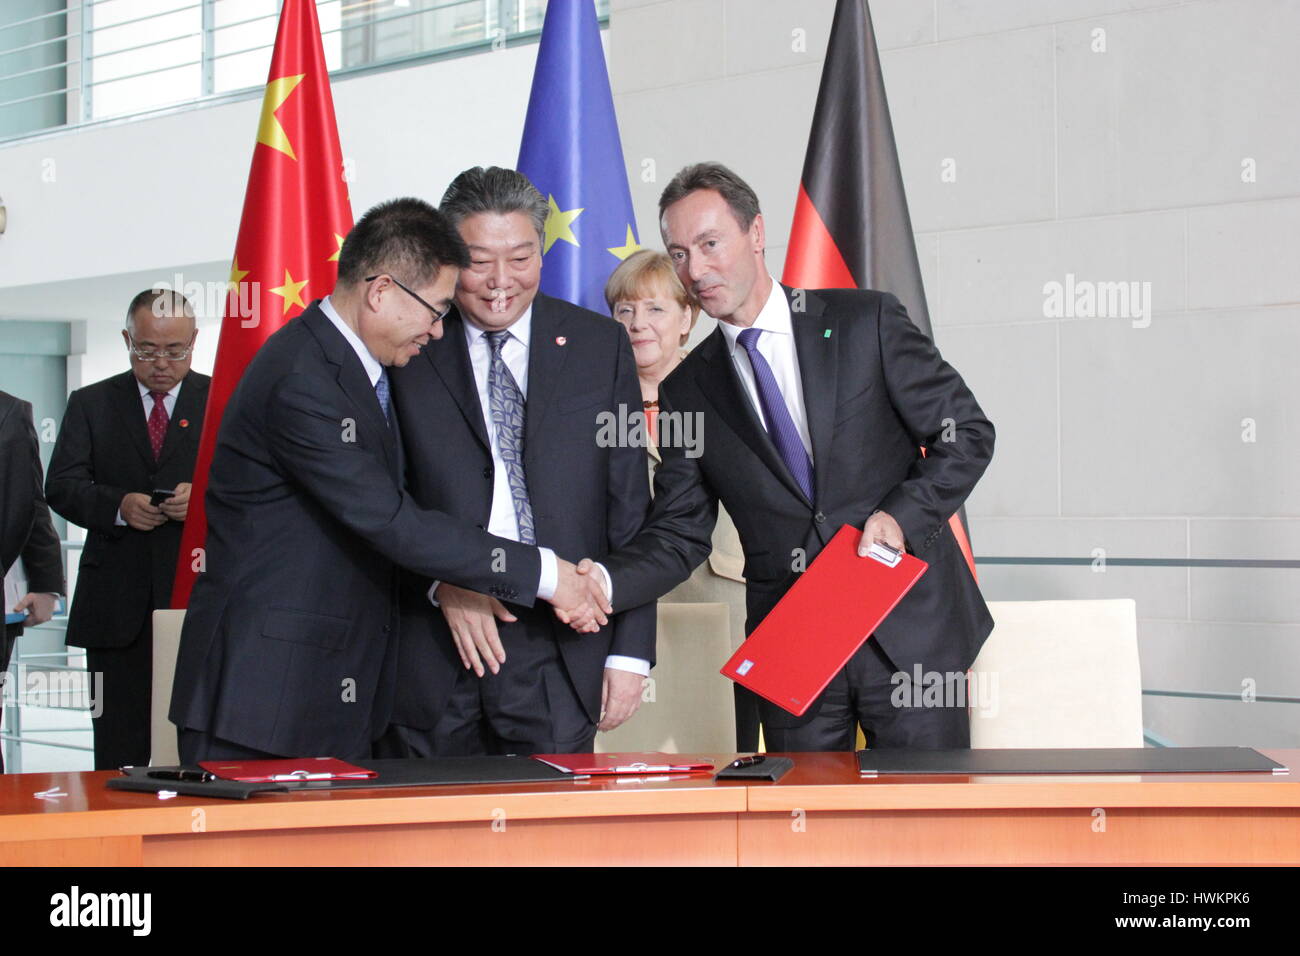 Berlín, Alemania, Octubre 10th, 2014: La delegación del gobierno chino se reúne con la delegación de Alemania por acuerdos económicos Foto de stock